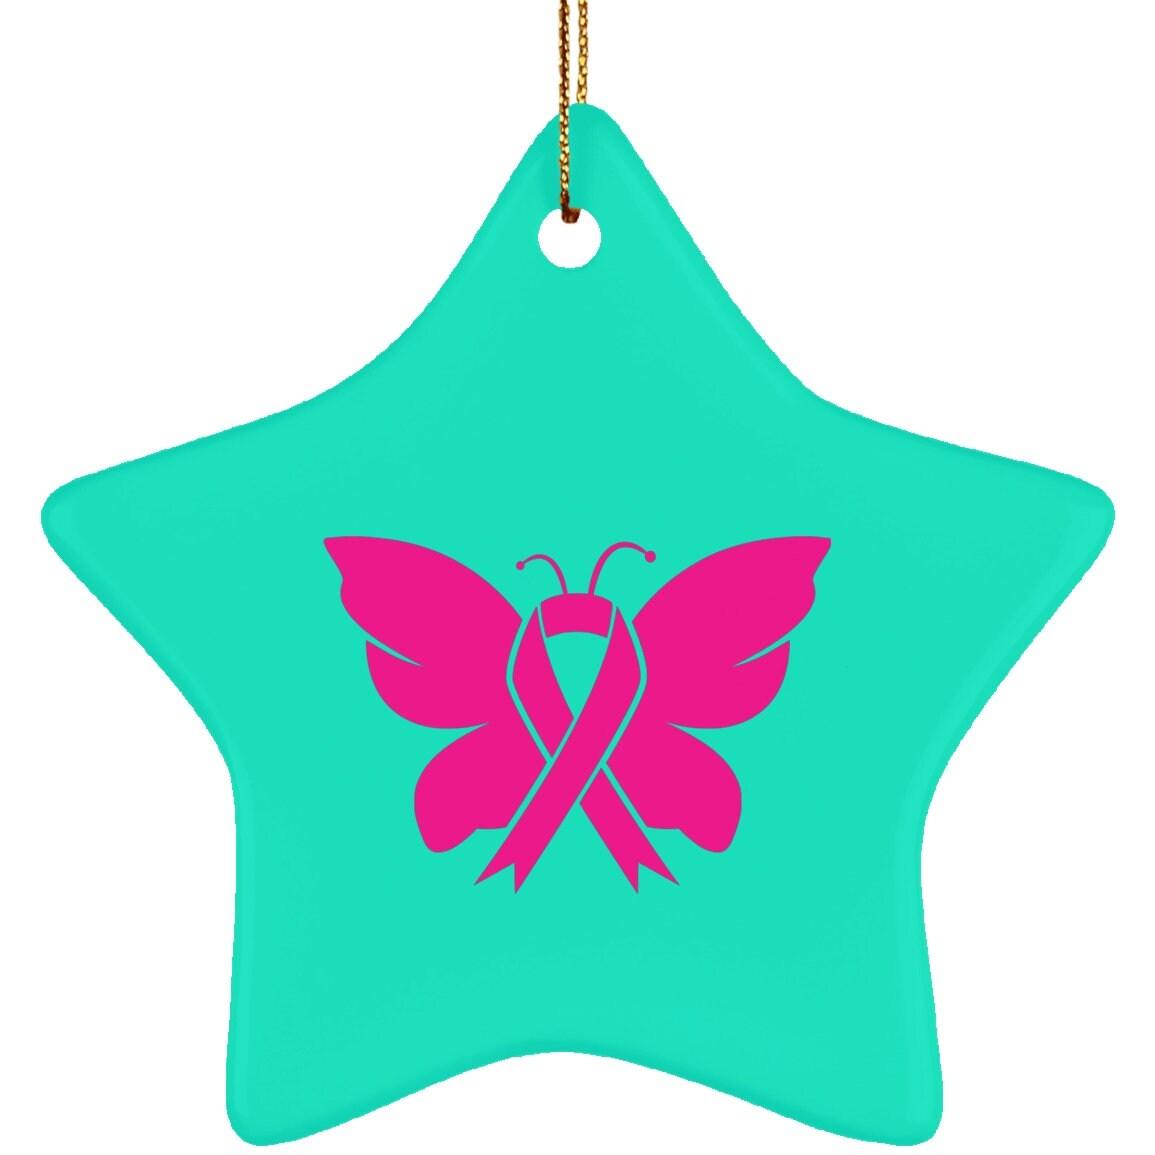 Керамічна прикраса у формі зірки щодо раку молочної залози, у жовтні ми носимо рожевий, сублімаційний дизайн, метелик, поінформованість про рак молочної залози, рожевий метелик - plusminusco.com